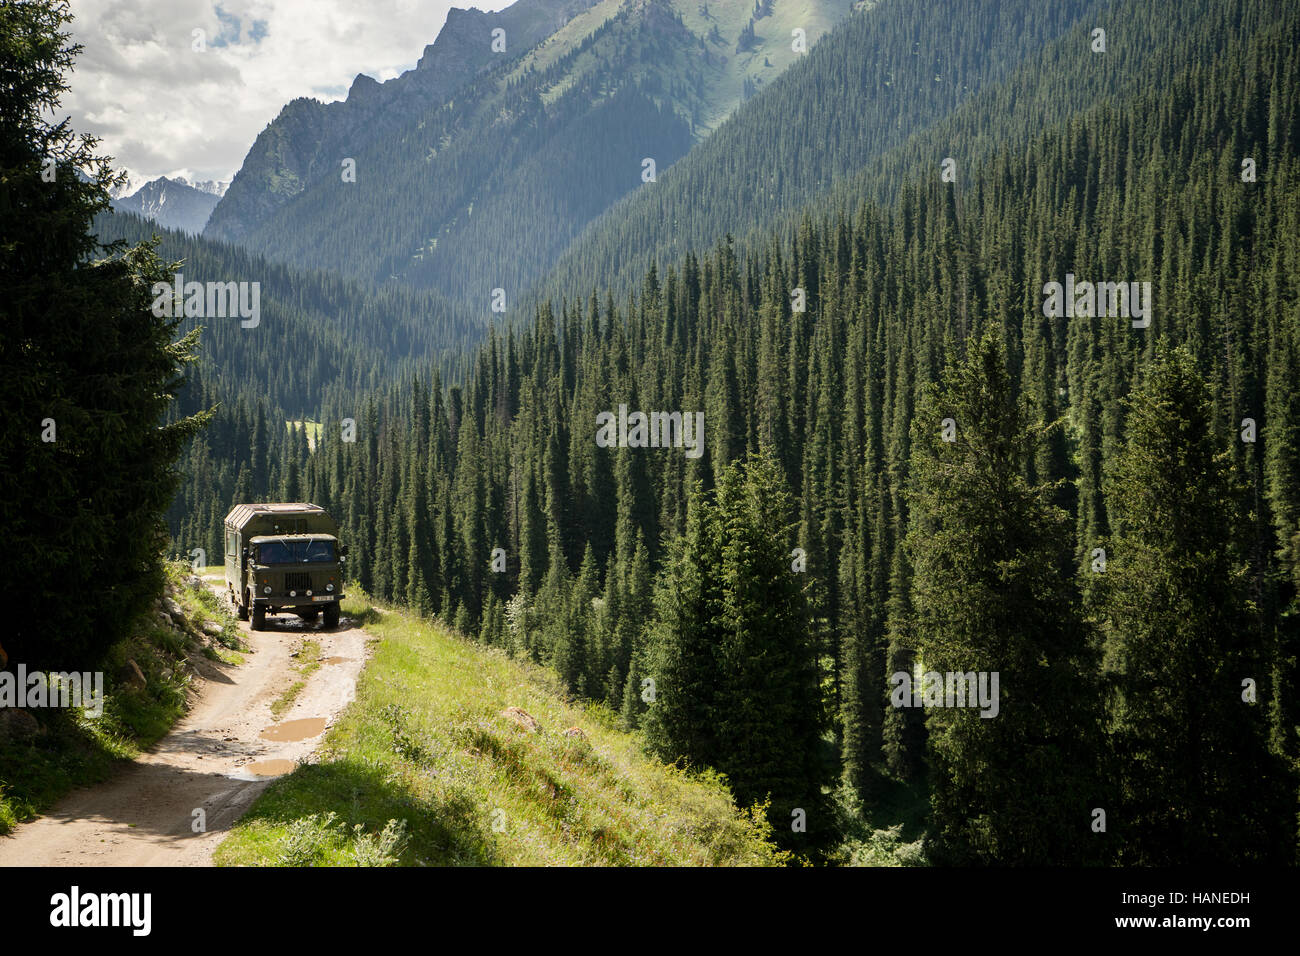 Un camion militare viaggia su una strada sterrata attraverso la valle piena di conifere Foto Stock